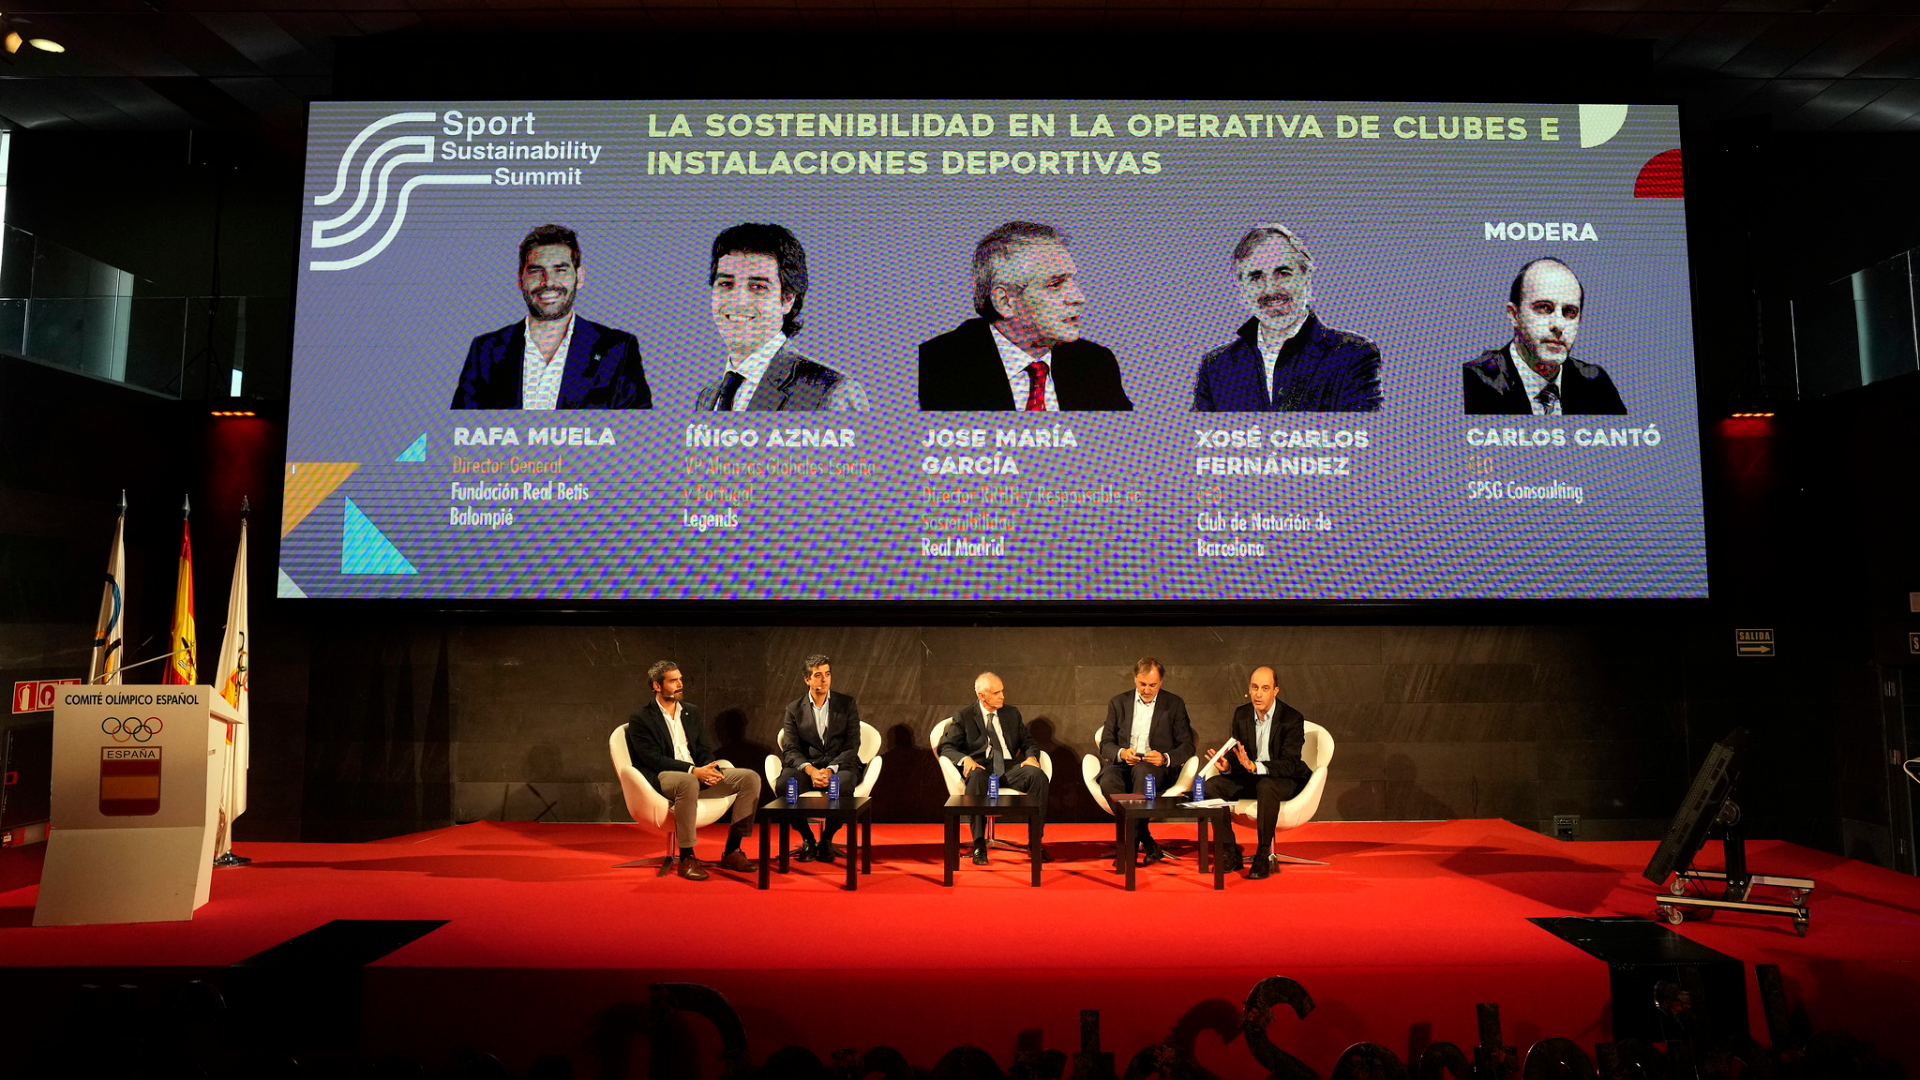 El Real Betis Balompié presente en el evento Sport Sustainability Summit organizado por el Comité Olímpico Español